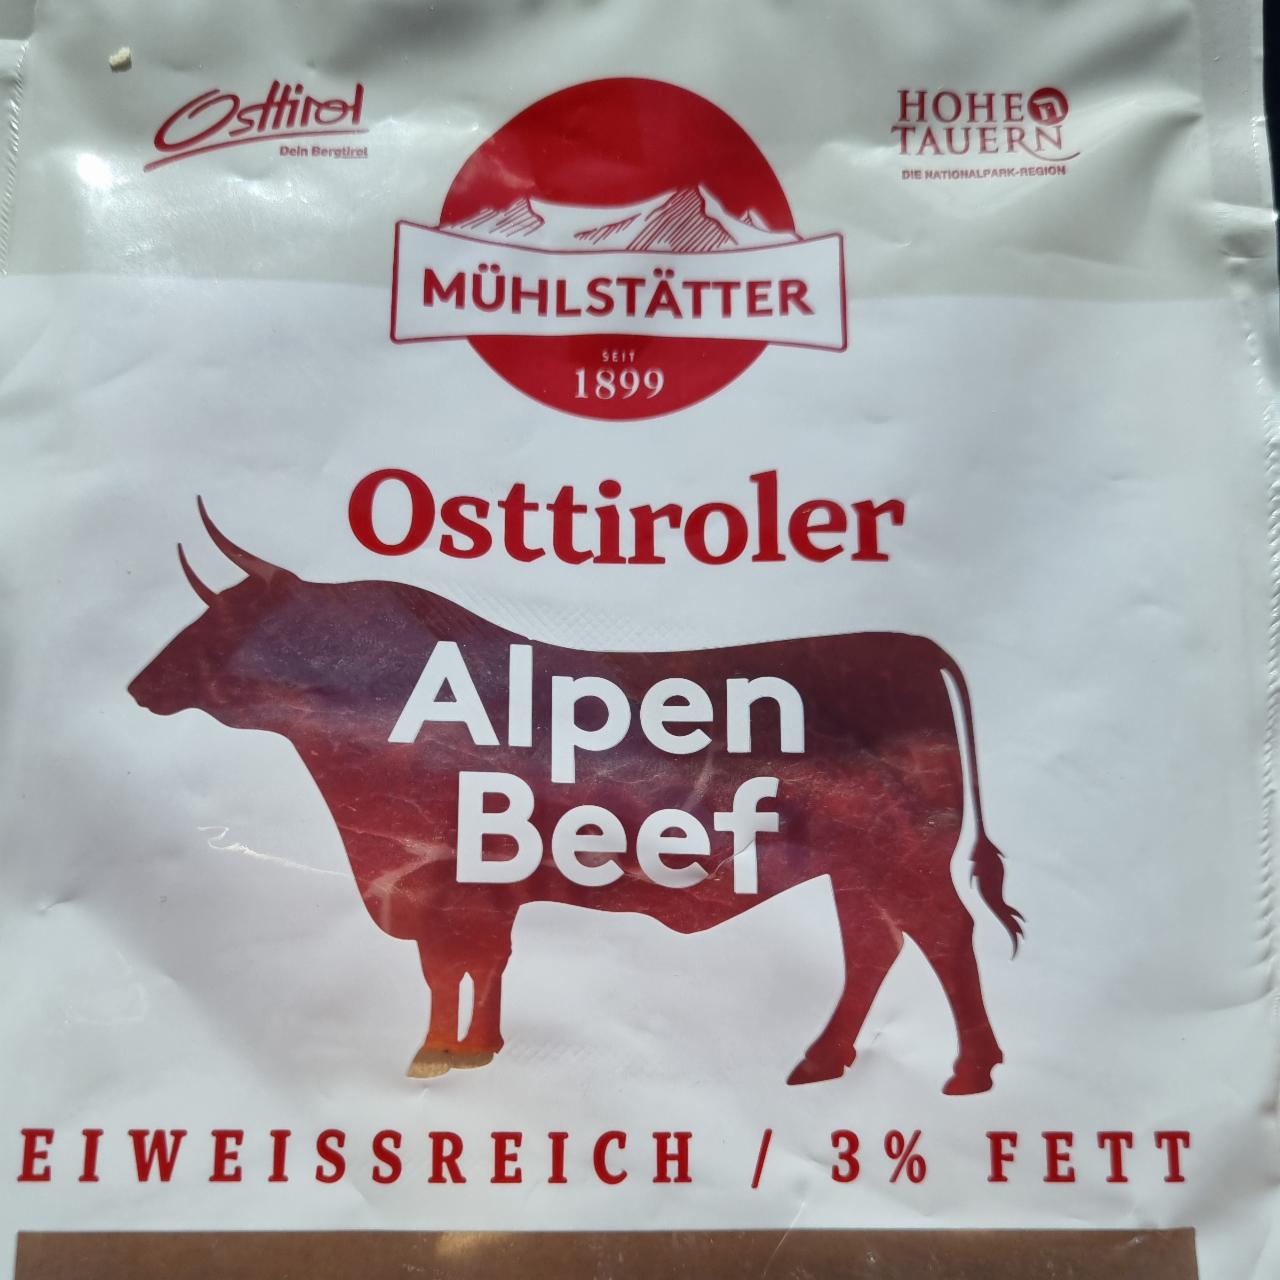 Fotografie - Osttiroler Alpen Beef Mühlstätter